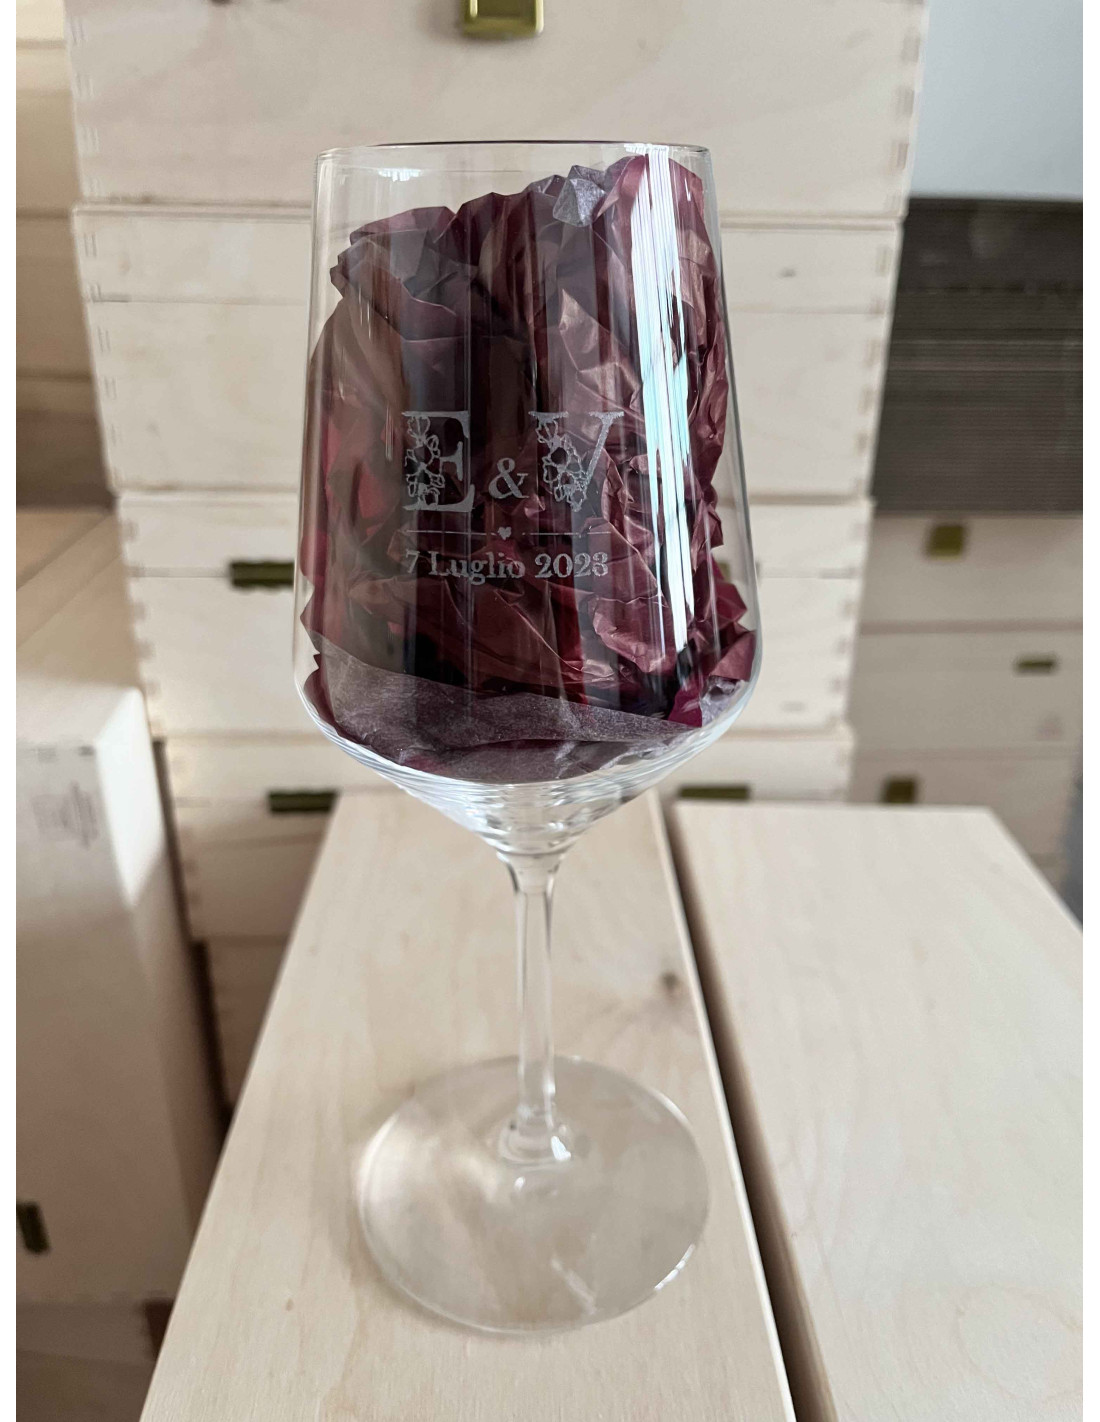 Bicchiere da Vino UNO - 9wines Shop Online Italia